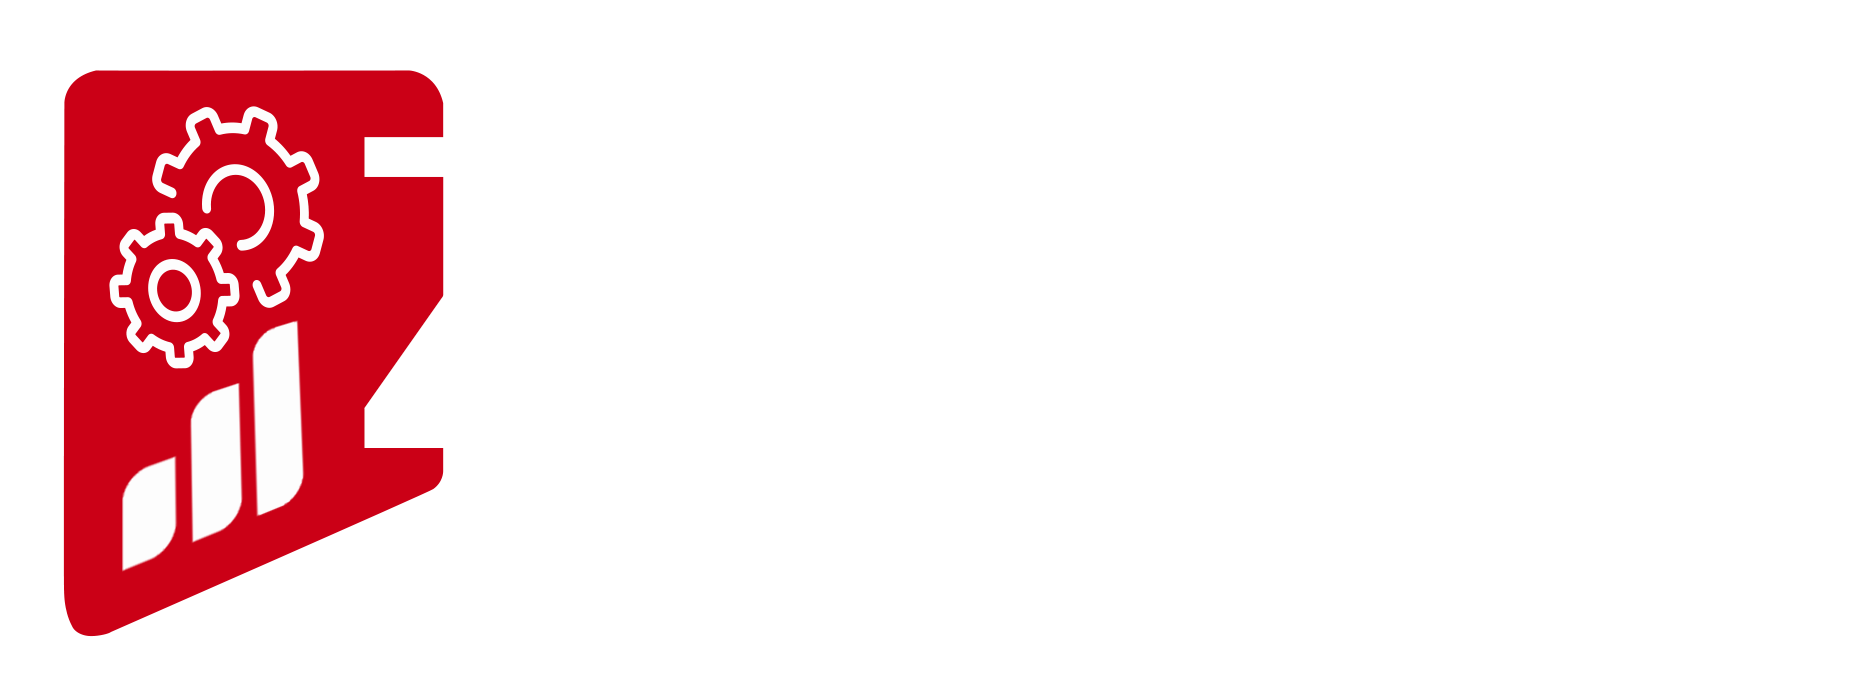 zyler-logo-white